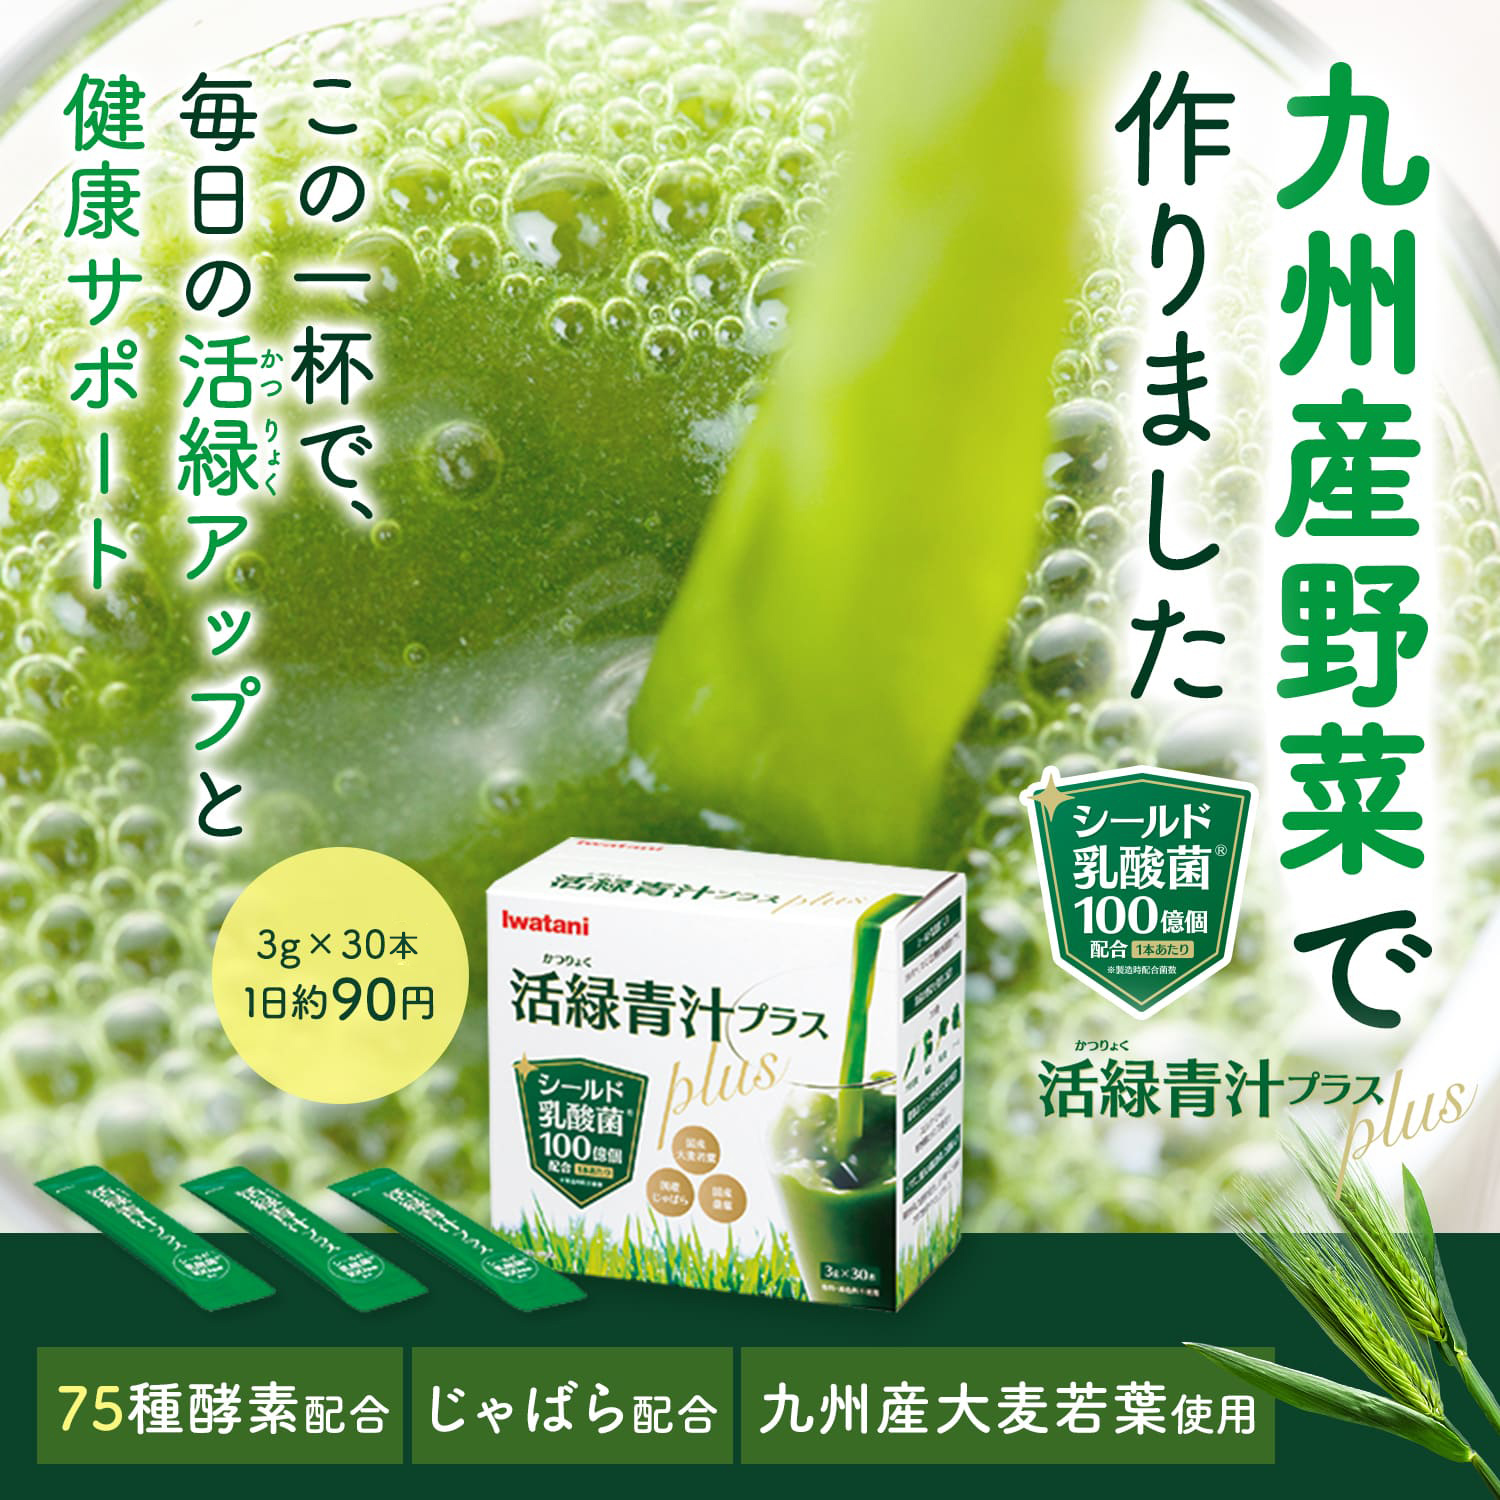 活緑青汁Plus 30包 イワタニの健康食品 / イワタニアイコレクト